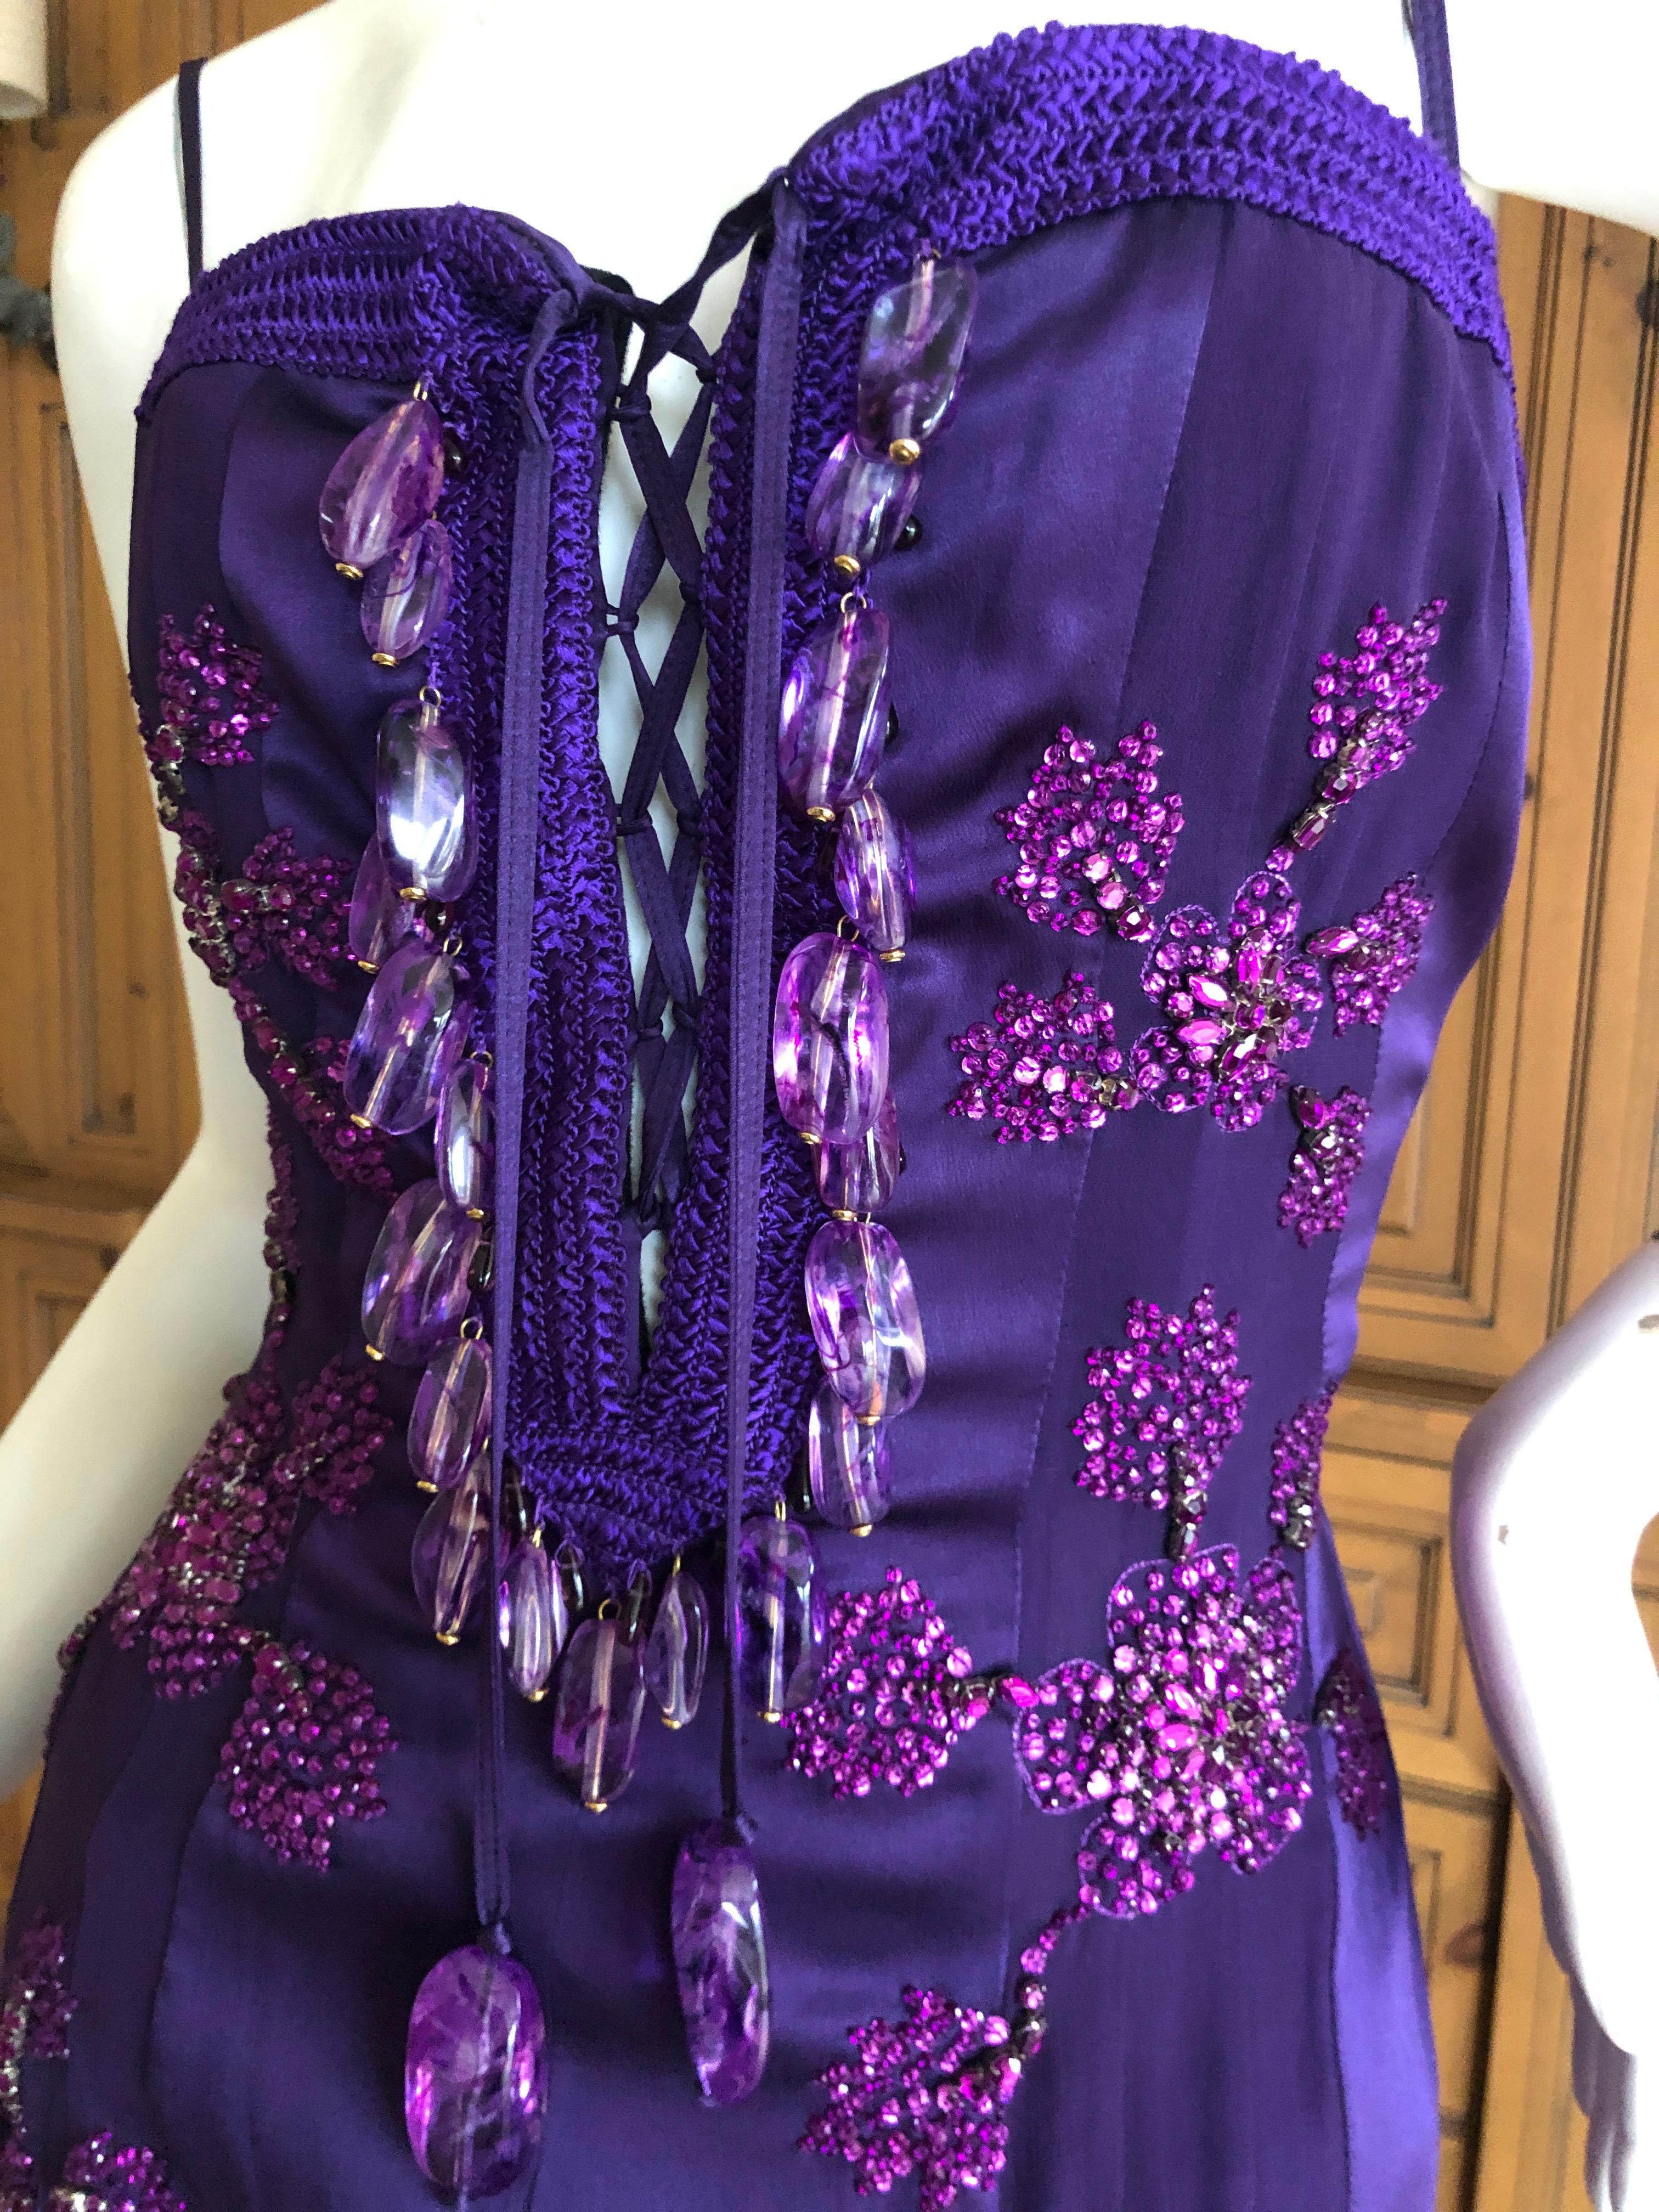 Women's Emanuel Ungaro Amethyst Embellished Vintage Silk Evening Dress by Peter Dundas For Sale